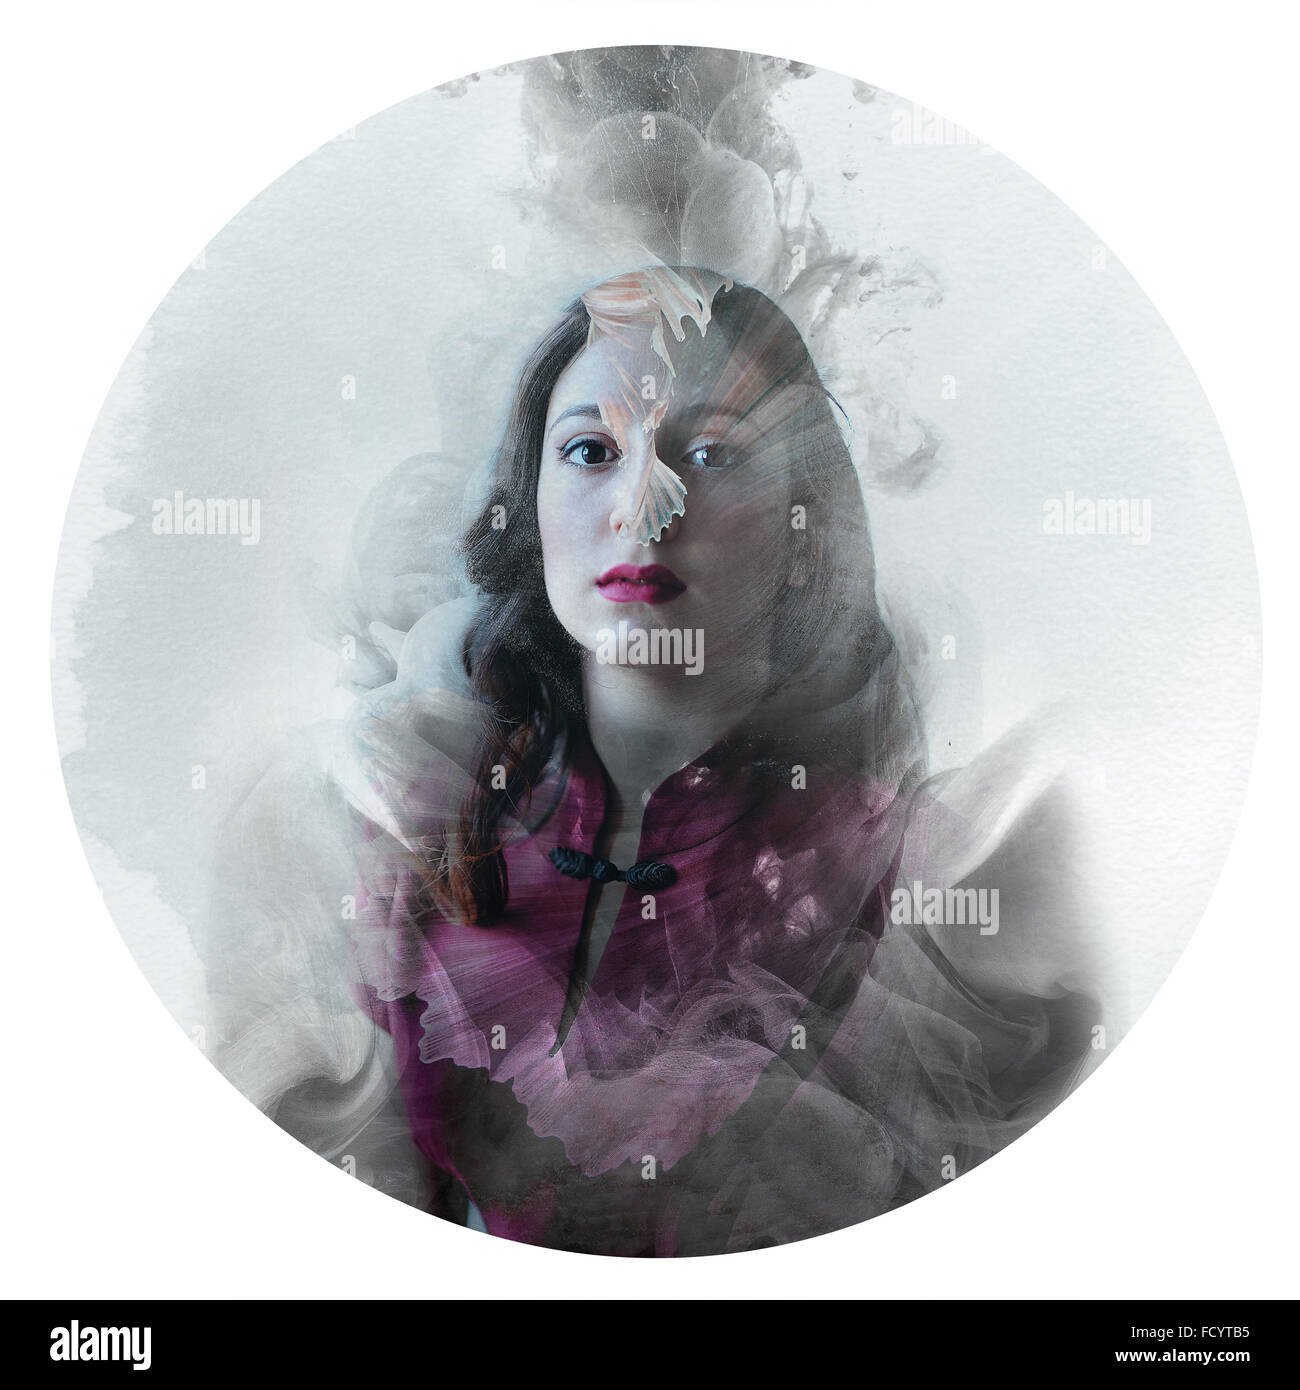 Ilustración artística, vintage círculo foto manipulación exposición múltiple - fantasía soñadora princesa mágica concepto Foto de stock